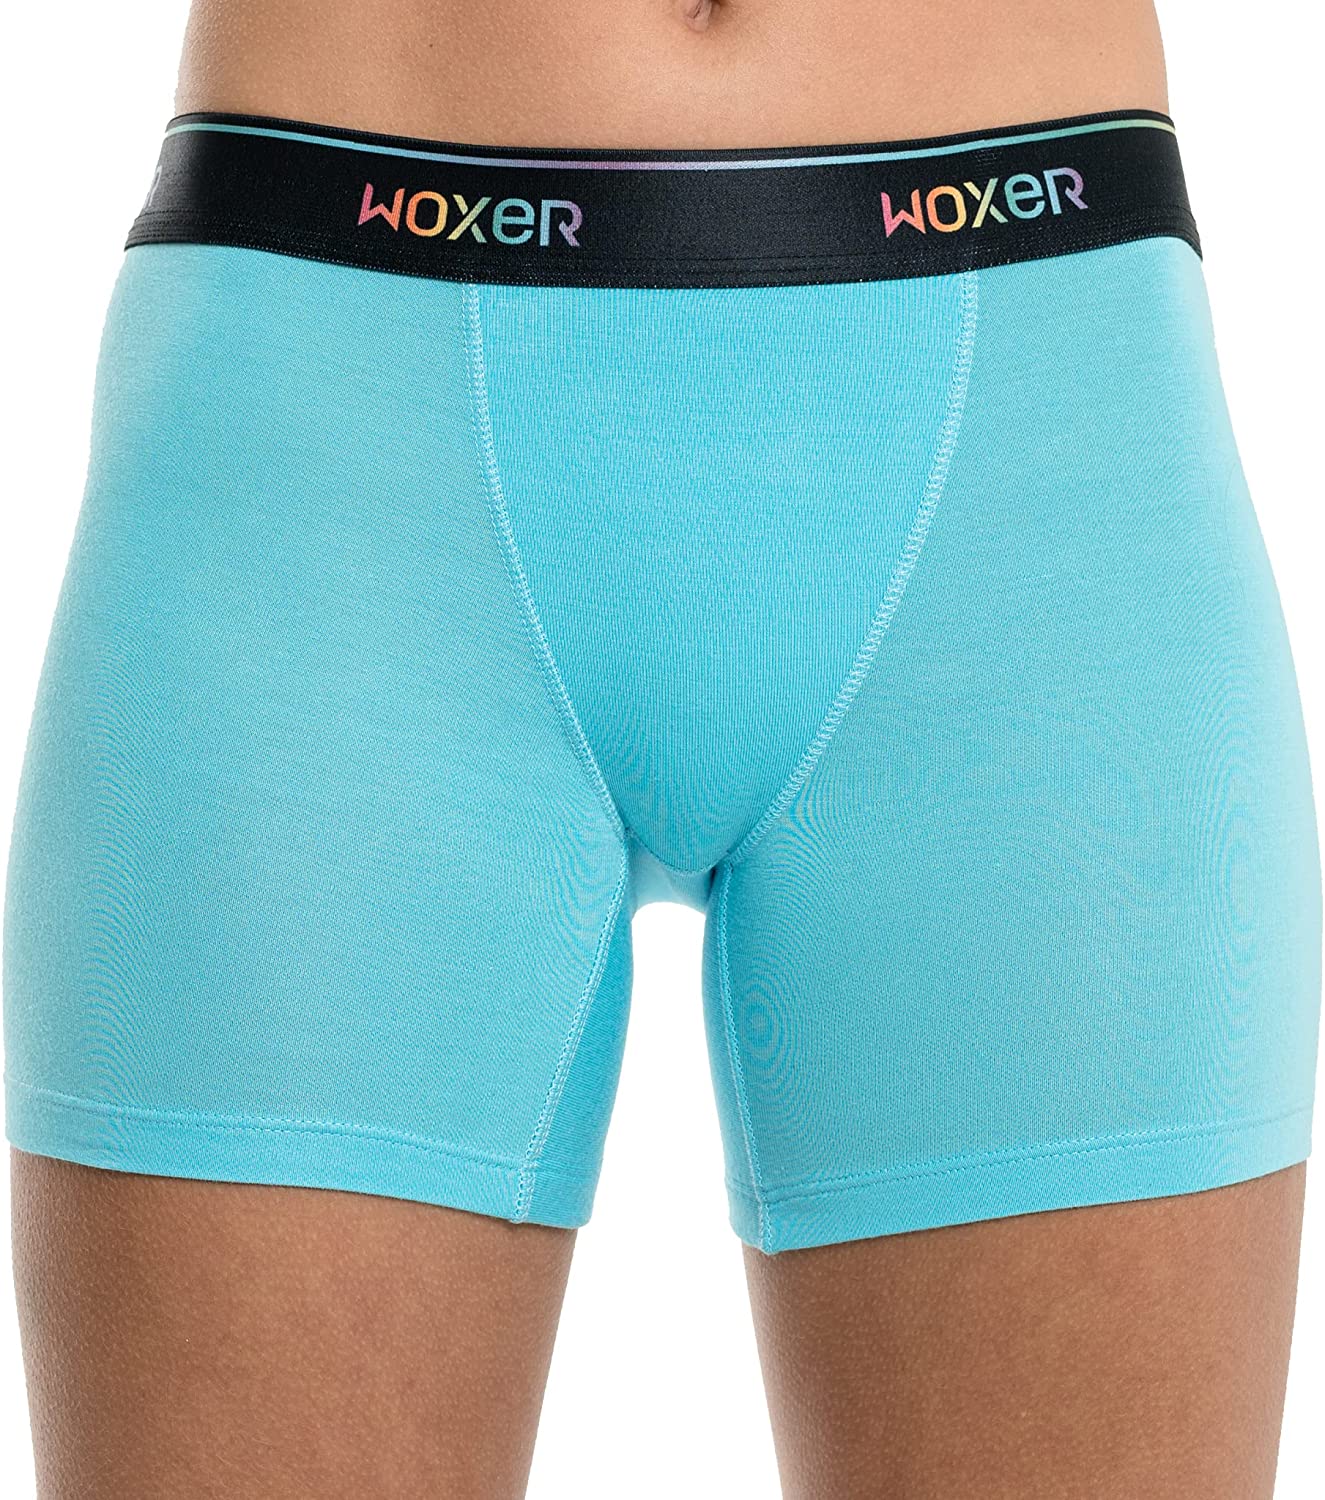 Woxer, Intimates & Sleepwear, Woxer Boxer Briefs Women Underwear Gender  Neutral Baller 5 Inseam Unisex Xl